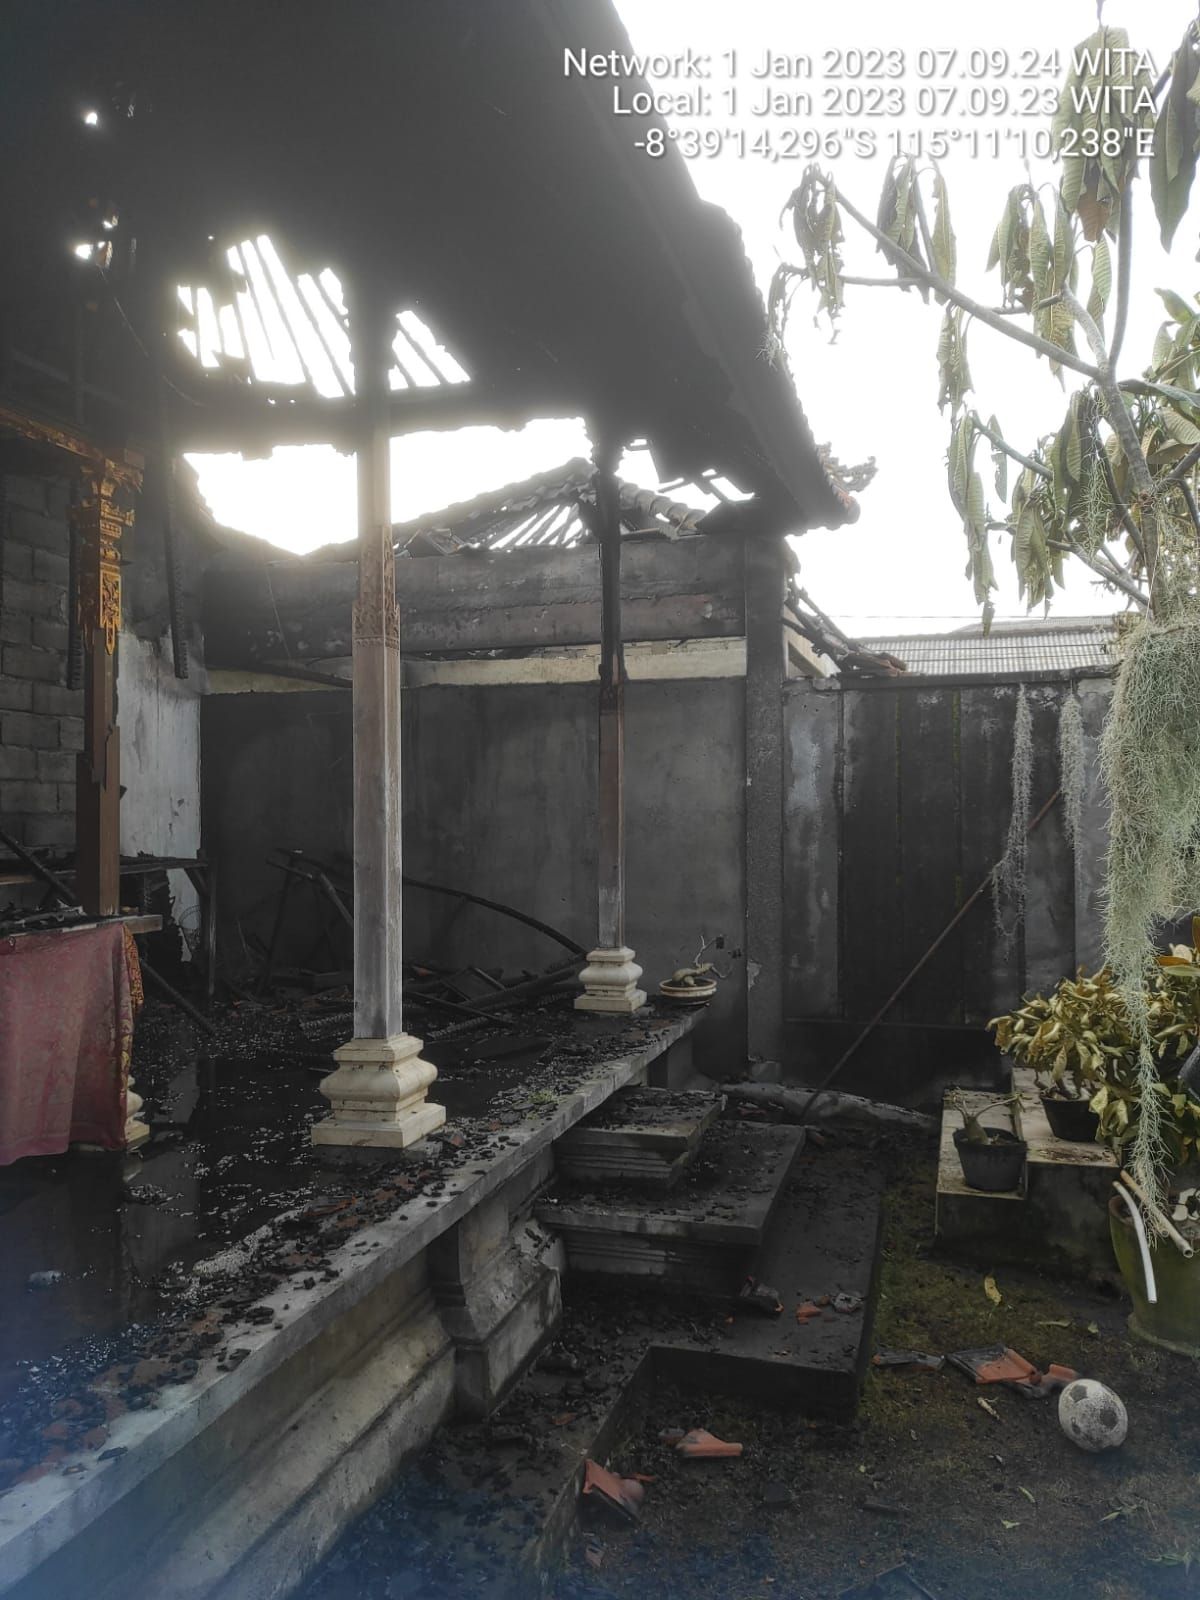 Seusai malam tahun baruan, sebuah bangunan di Jalan Gunung Tangkuban Perahu, Gang Angsa, Nomor 1, Kelurahan Padangsambian, Denpasar Barat, Kota Denpasar, Bali hangus terbakar. 